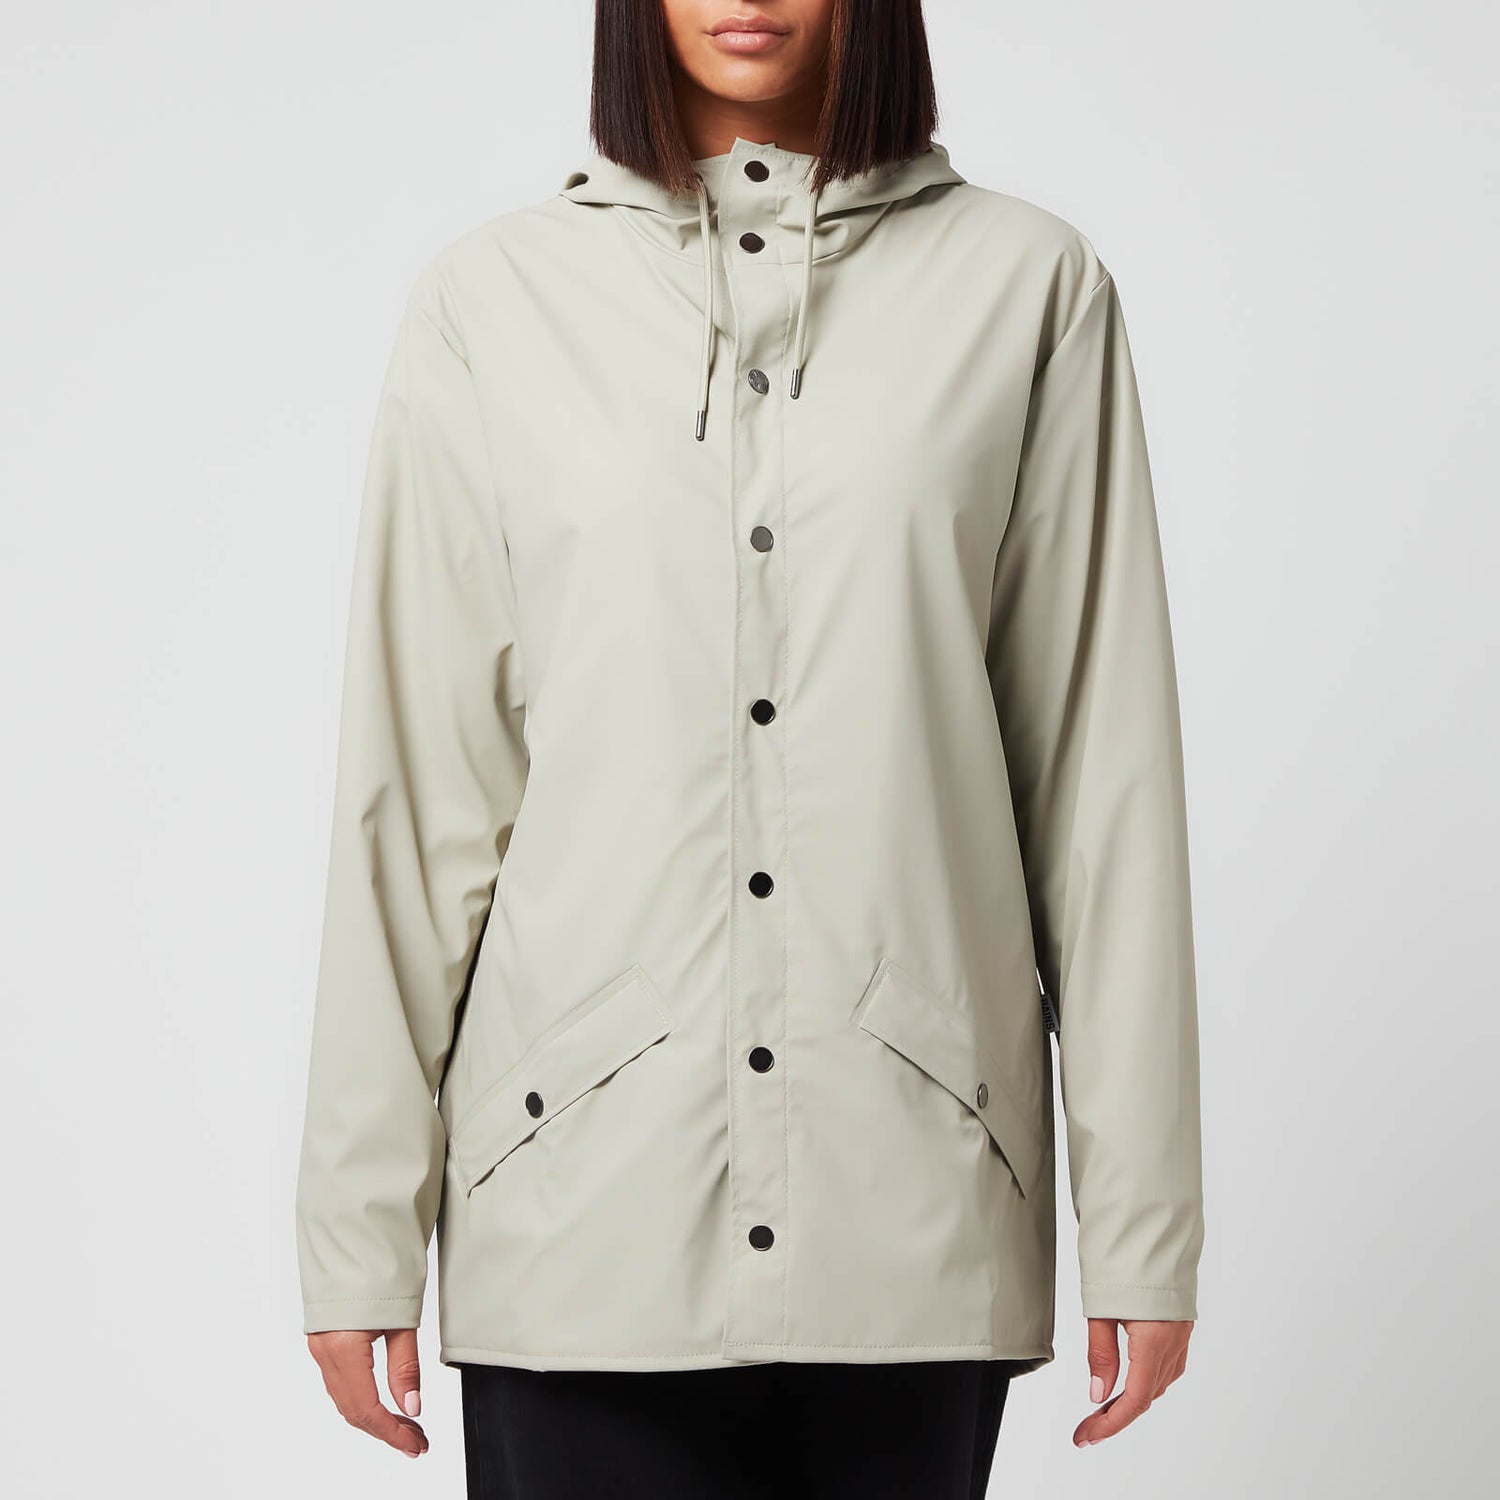 Rains Women's Jacket - Cement